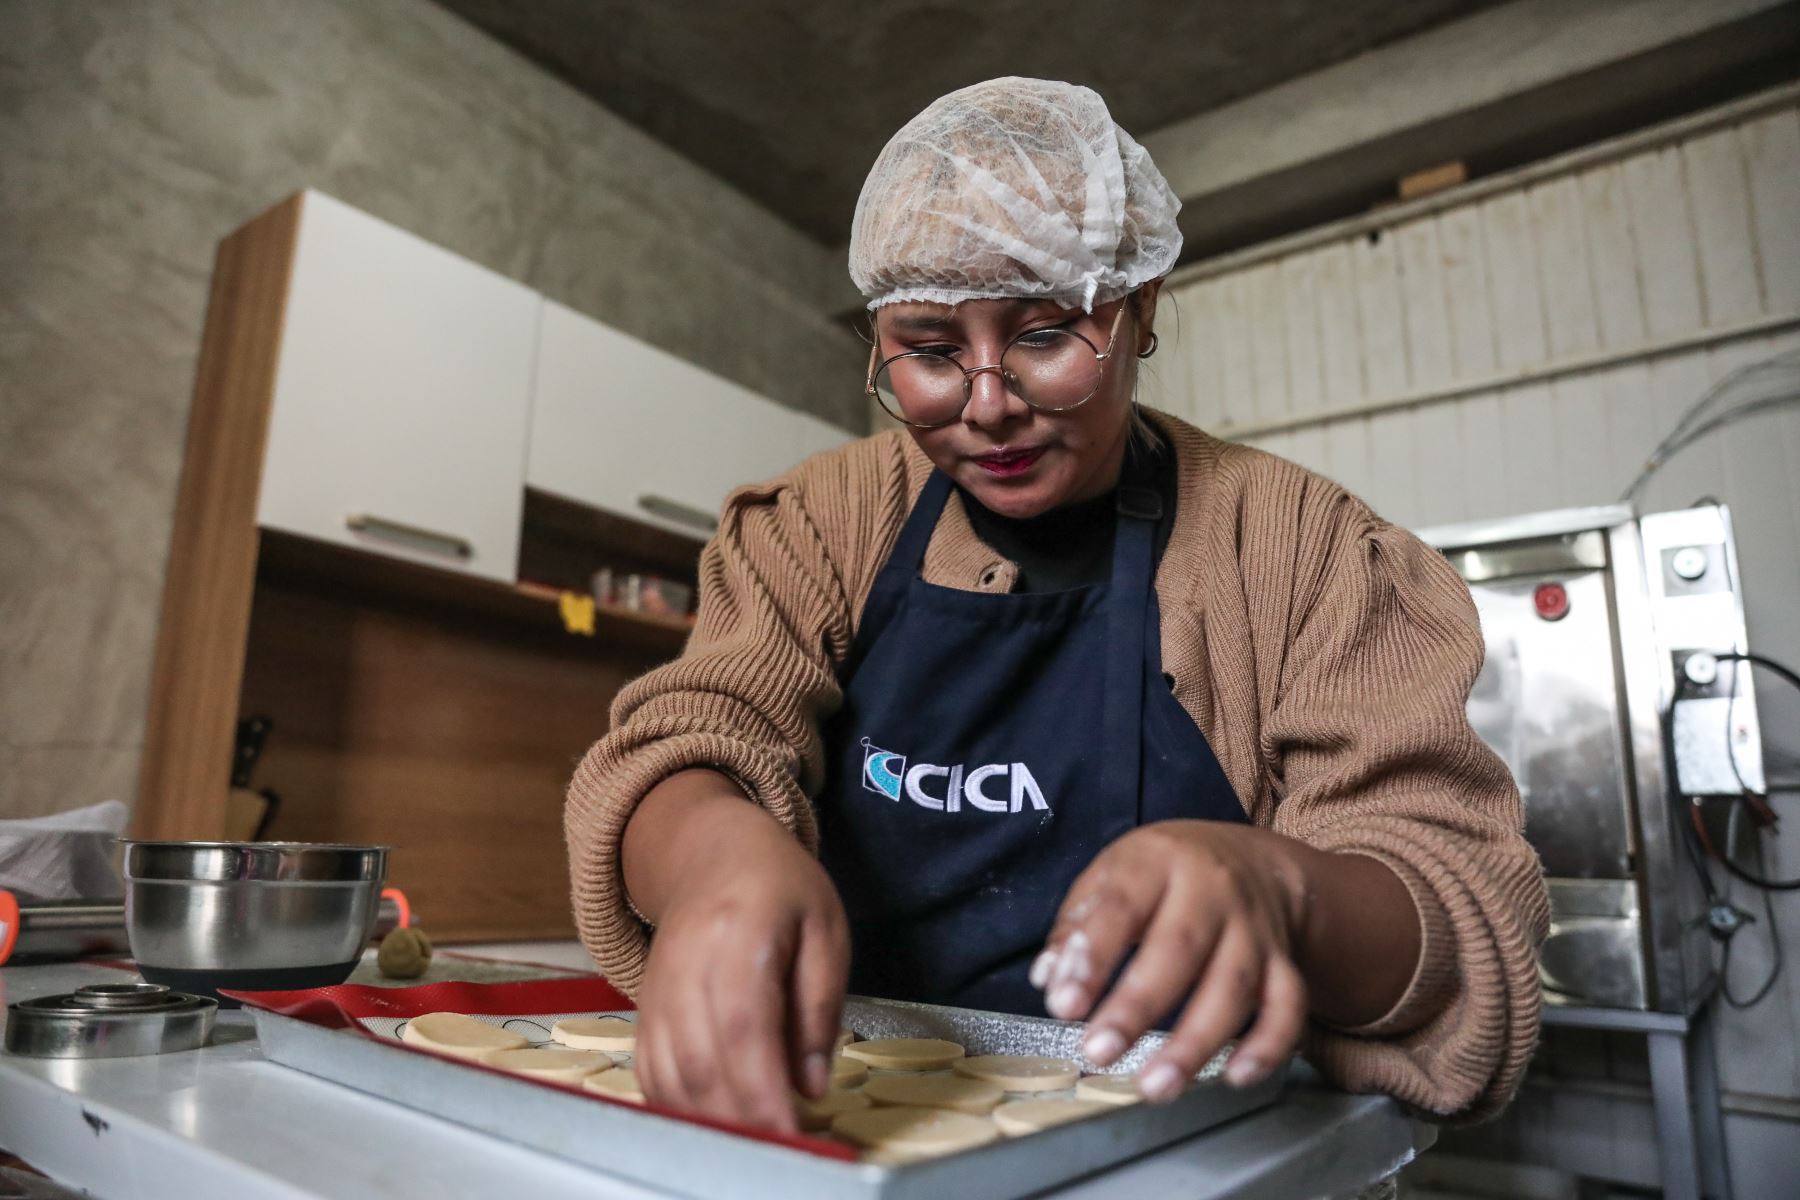 Marisol Cruz Puma, una de las jóvenes capacitadas por el Programa Nacional Aurora, preparando un pedido de alfajores para su emprendimiento "Emar". Foto: ANDINA/Connie Calderon